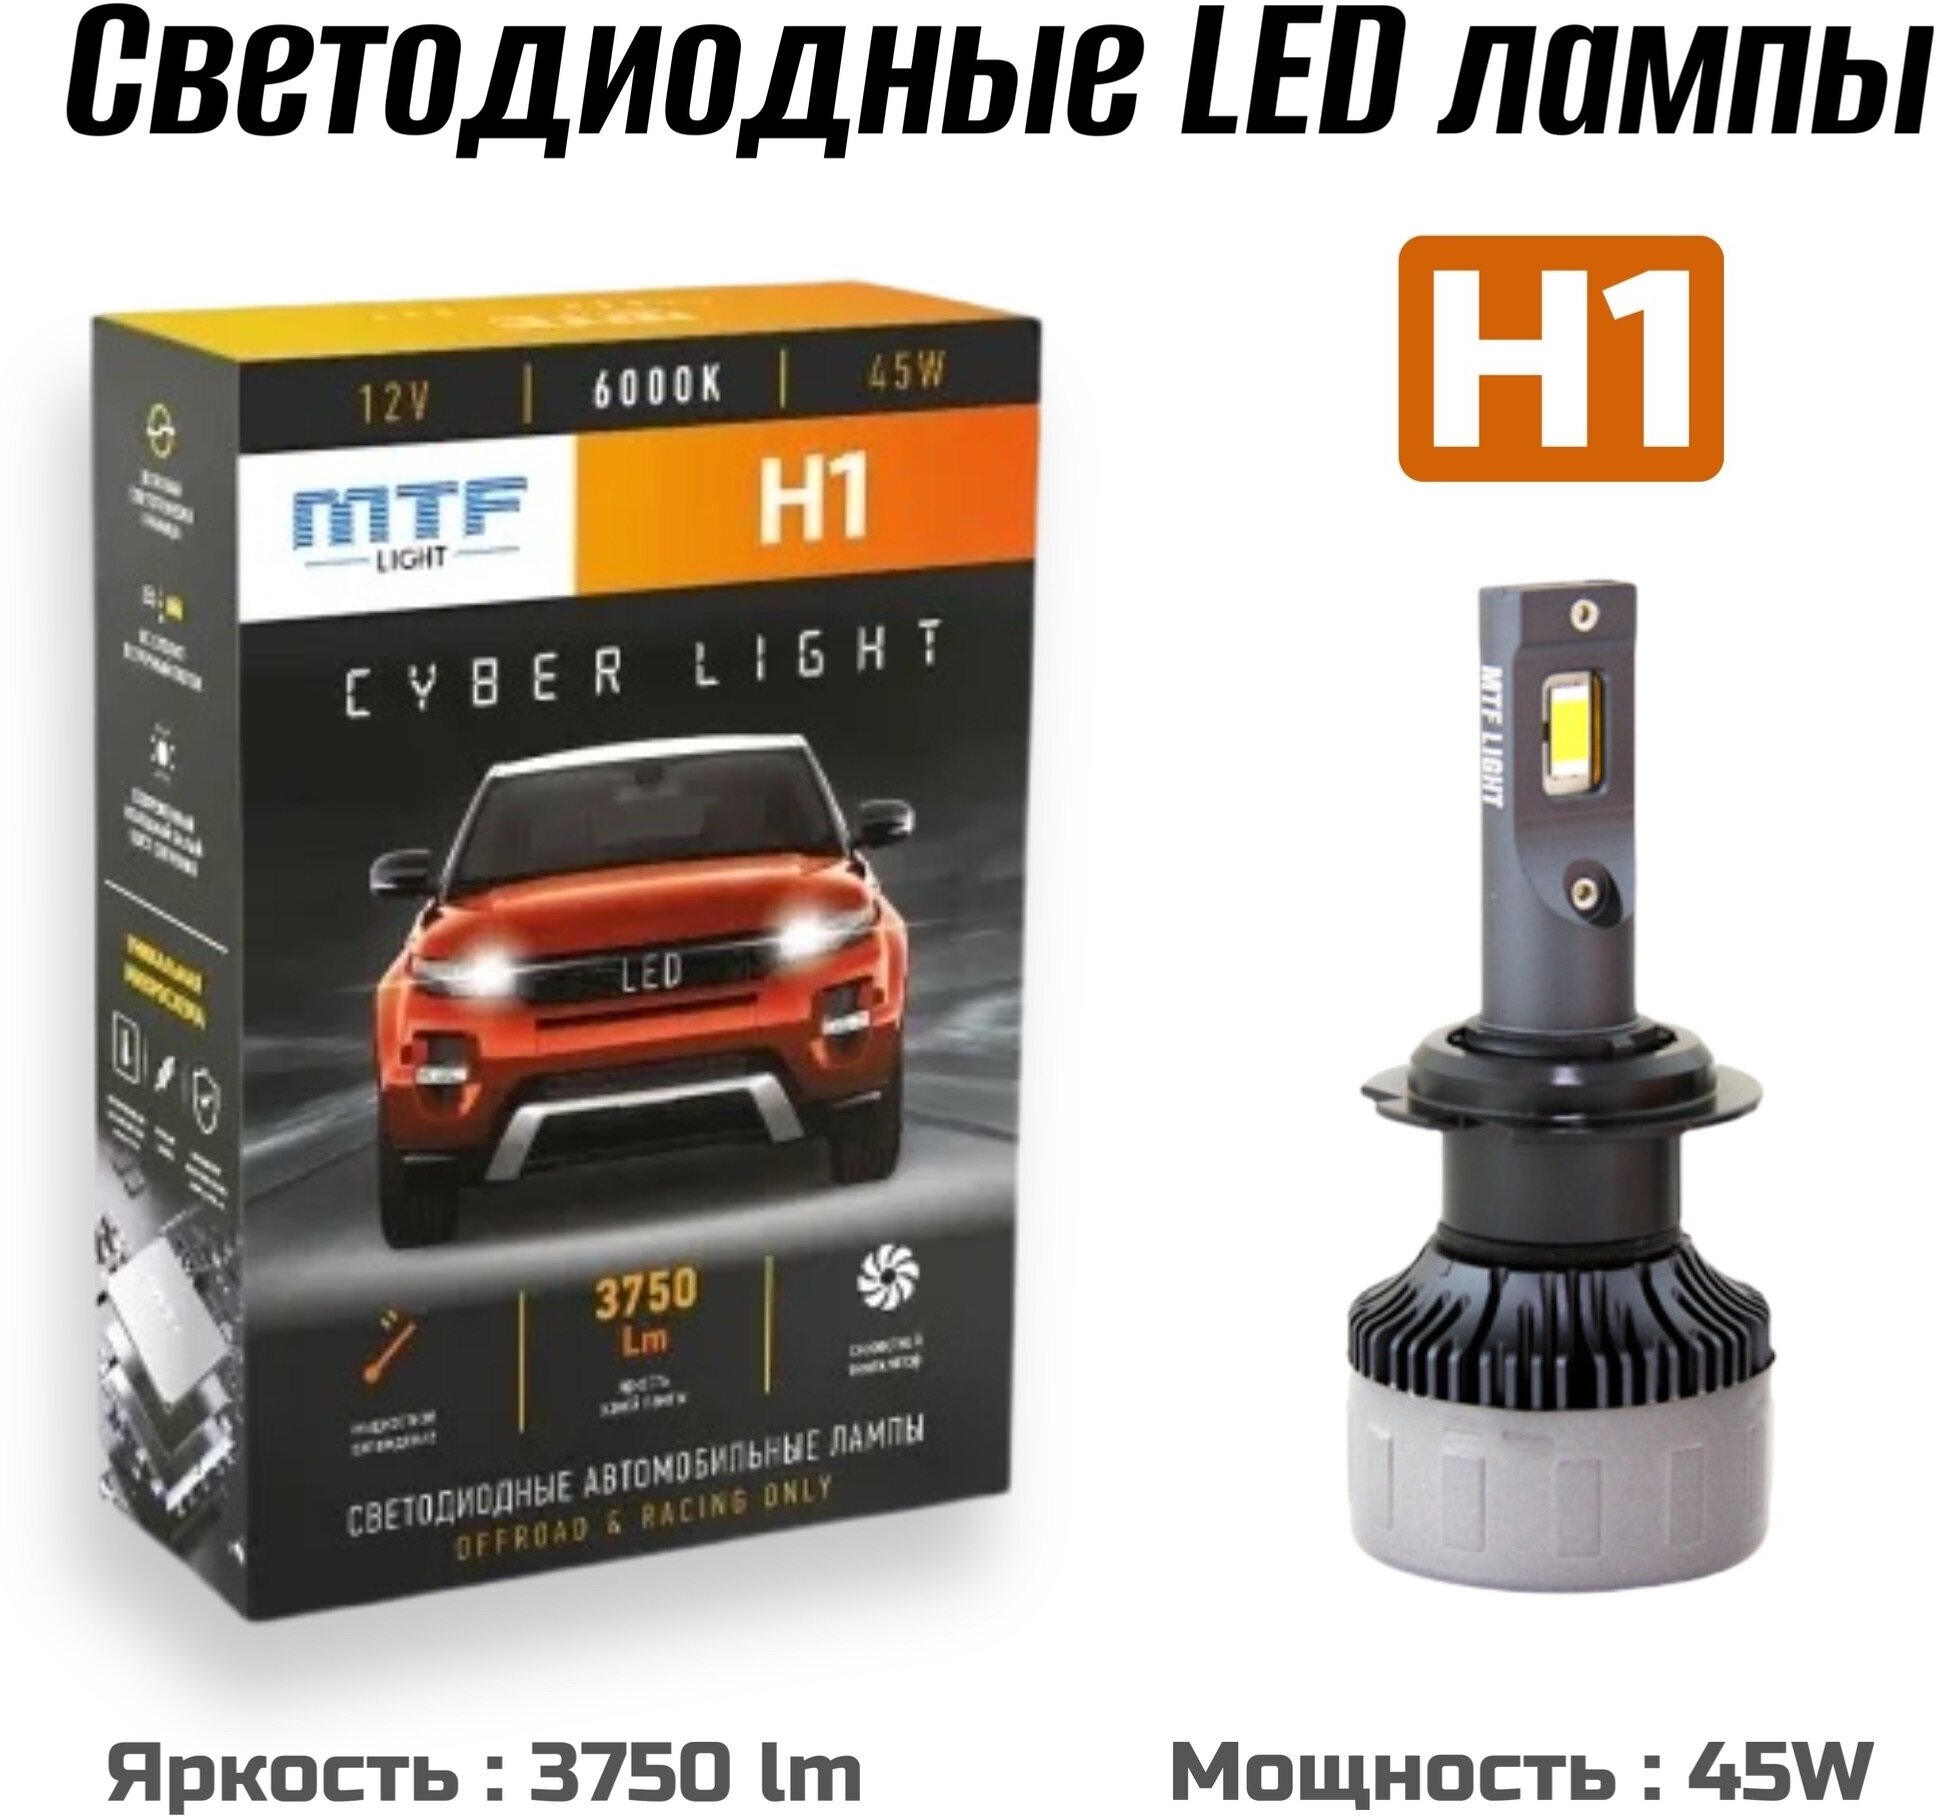 Светодиодные автомобильные лампы MTF Light CYBER LIGHT LED H1 6000K 12V